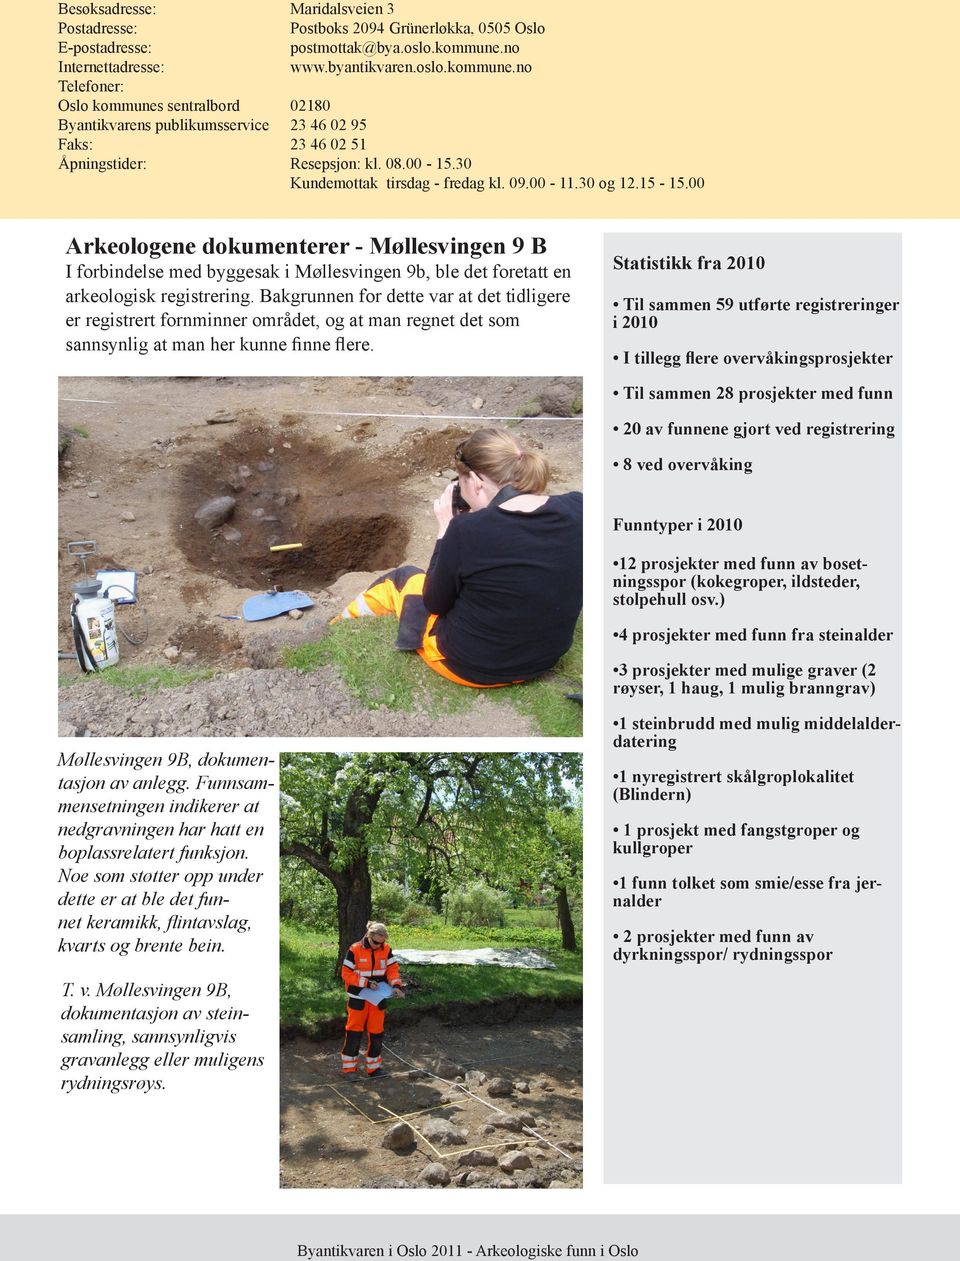 00 Arkeologene dokumenterer - Møllesvingen 9 B I forbindelse med byggesak i Møllesvingen 9b, ble det foretatt en arkeologisk registrering.